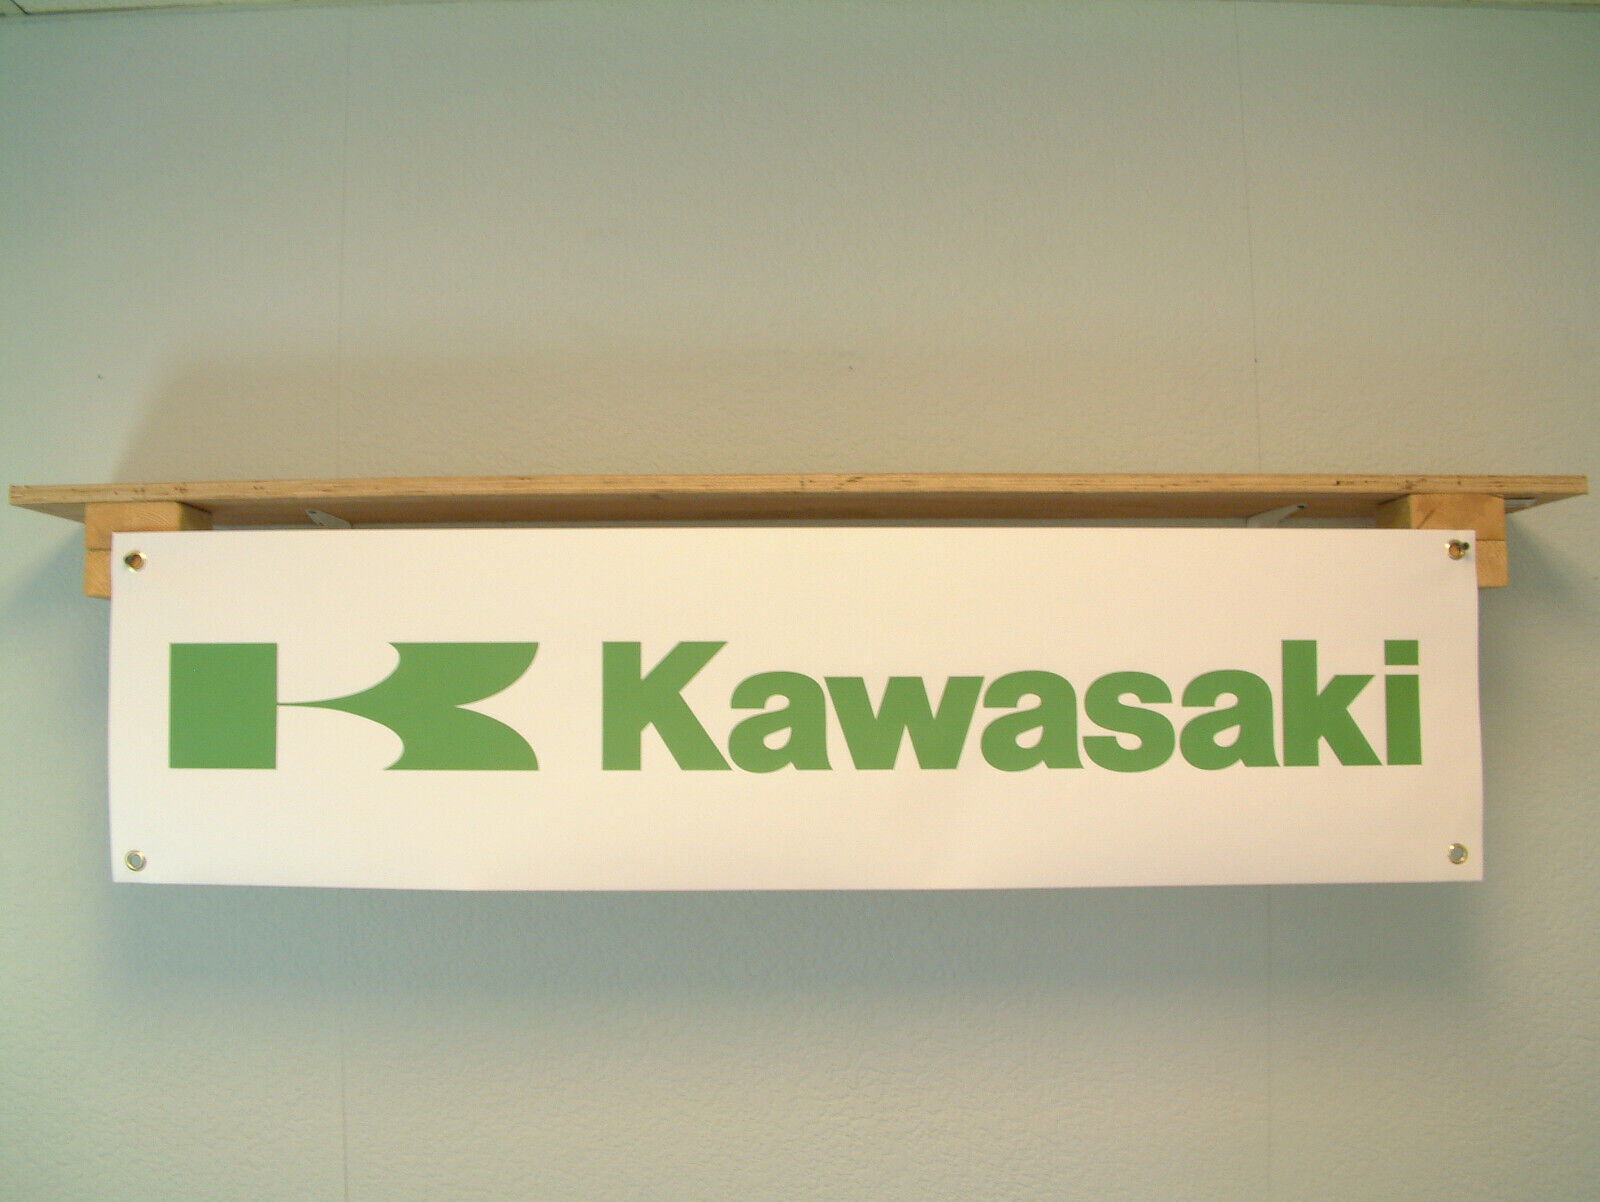 Kawasaki BANNER Motorcycle Show Workshop Wall Display printed pvc sign